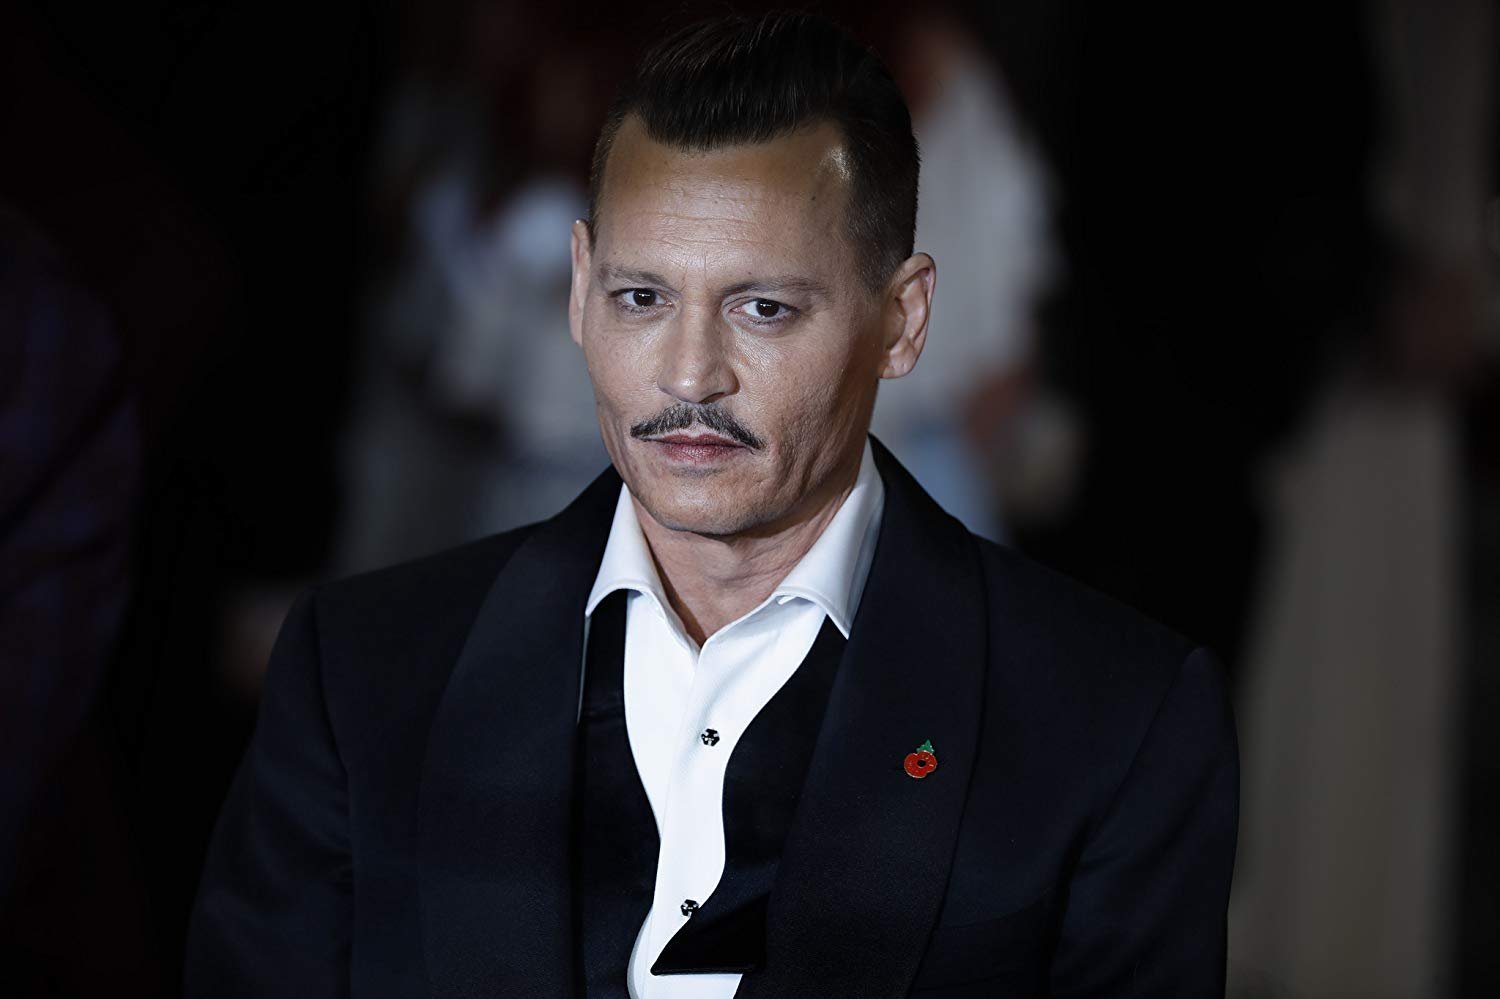 Relembre as principais polêmicas envolvendo Johnny Depp